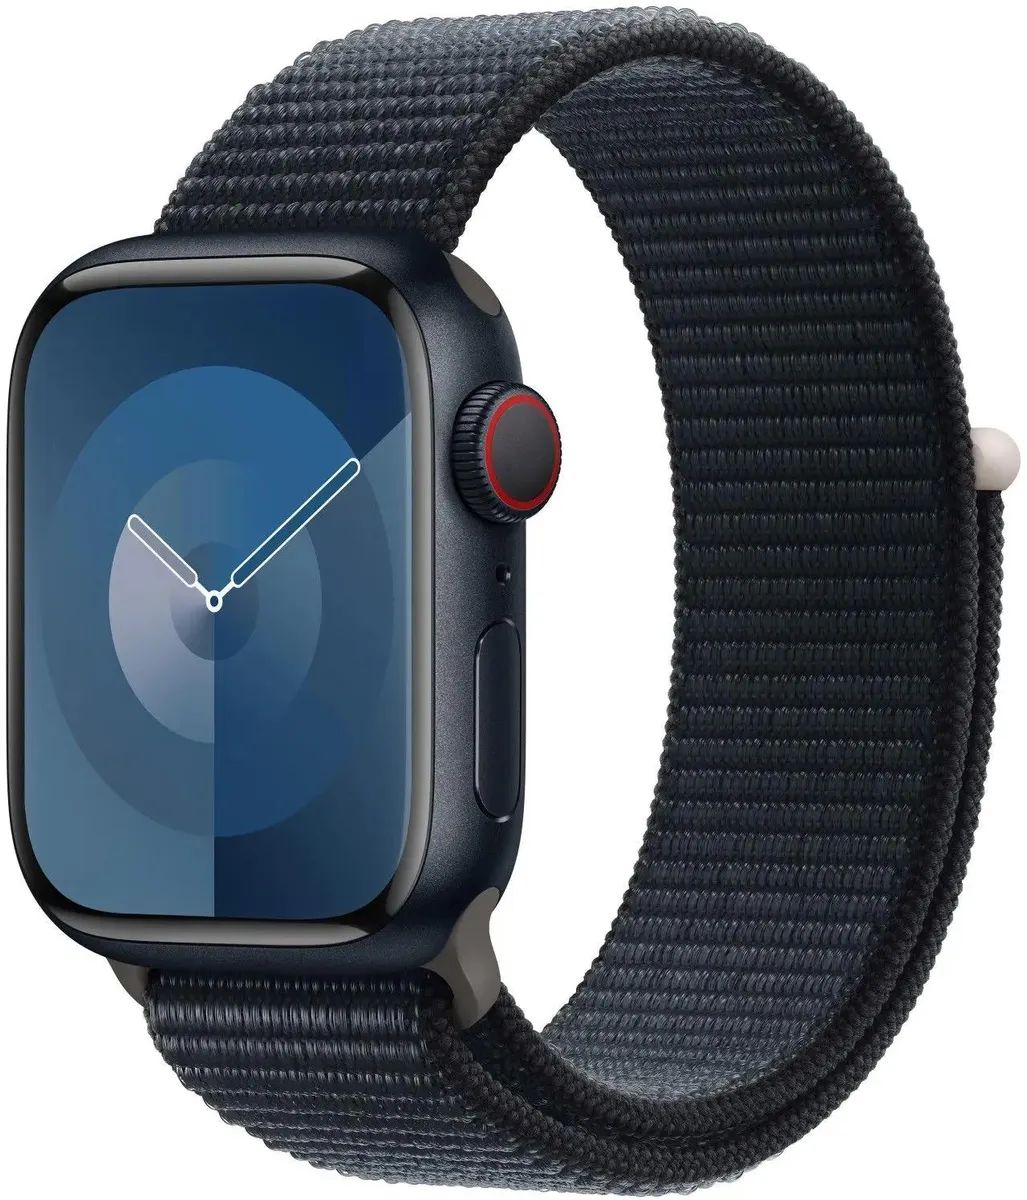 Apple watch a2722